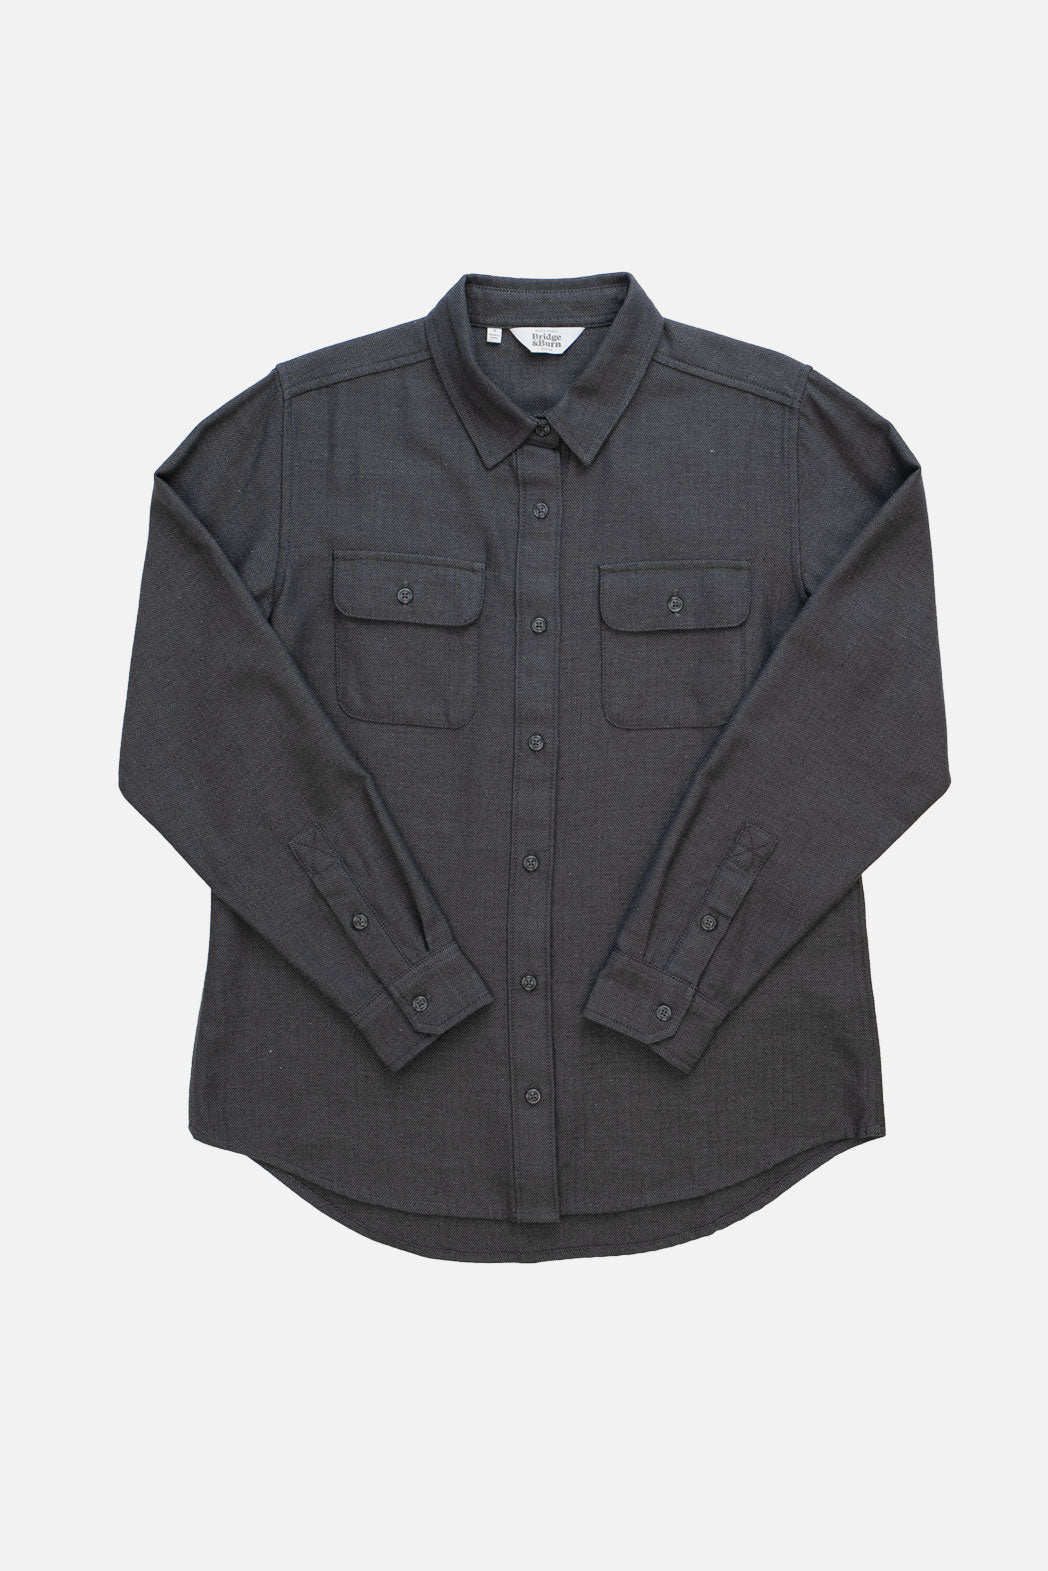 Lenon Shirt / Charcoal Herringbone